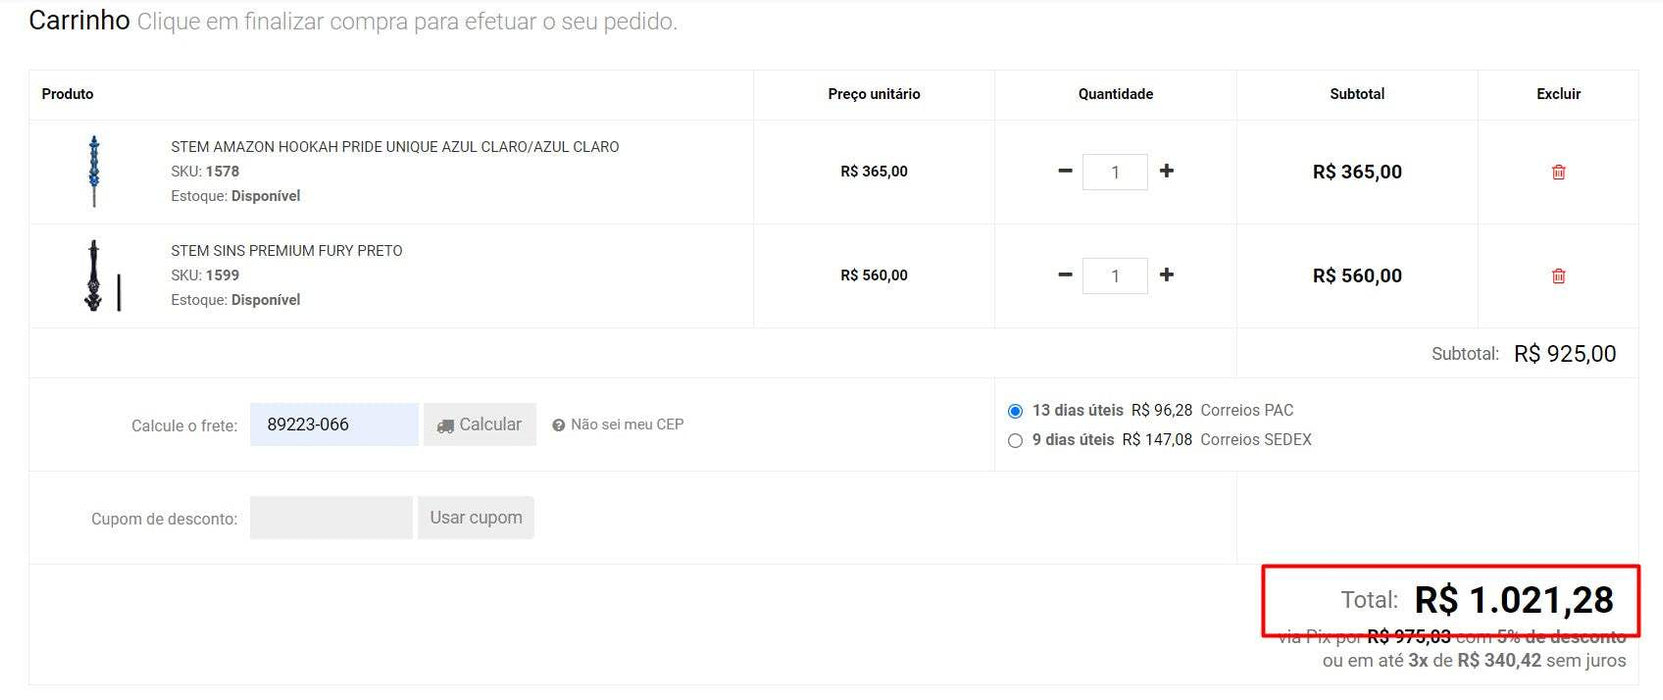 パーソナルショッパー | ブラジルから購入 - キット Pelúcias - Turma Do Pica Pau Ty - 18 キット (DDP)